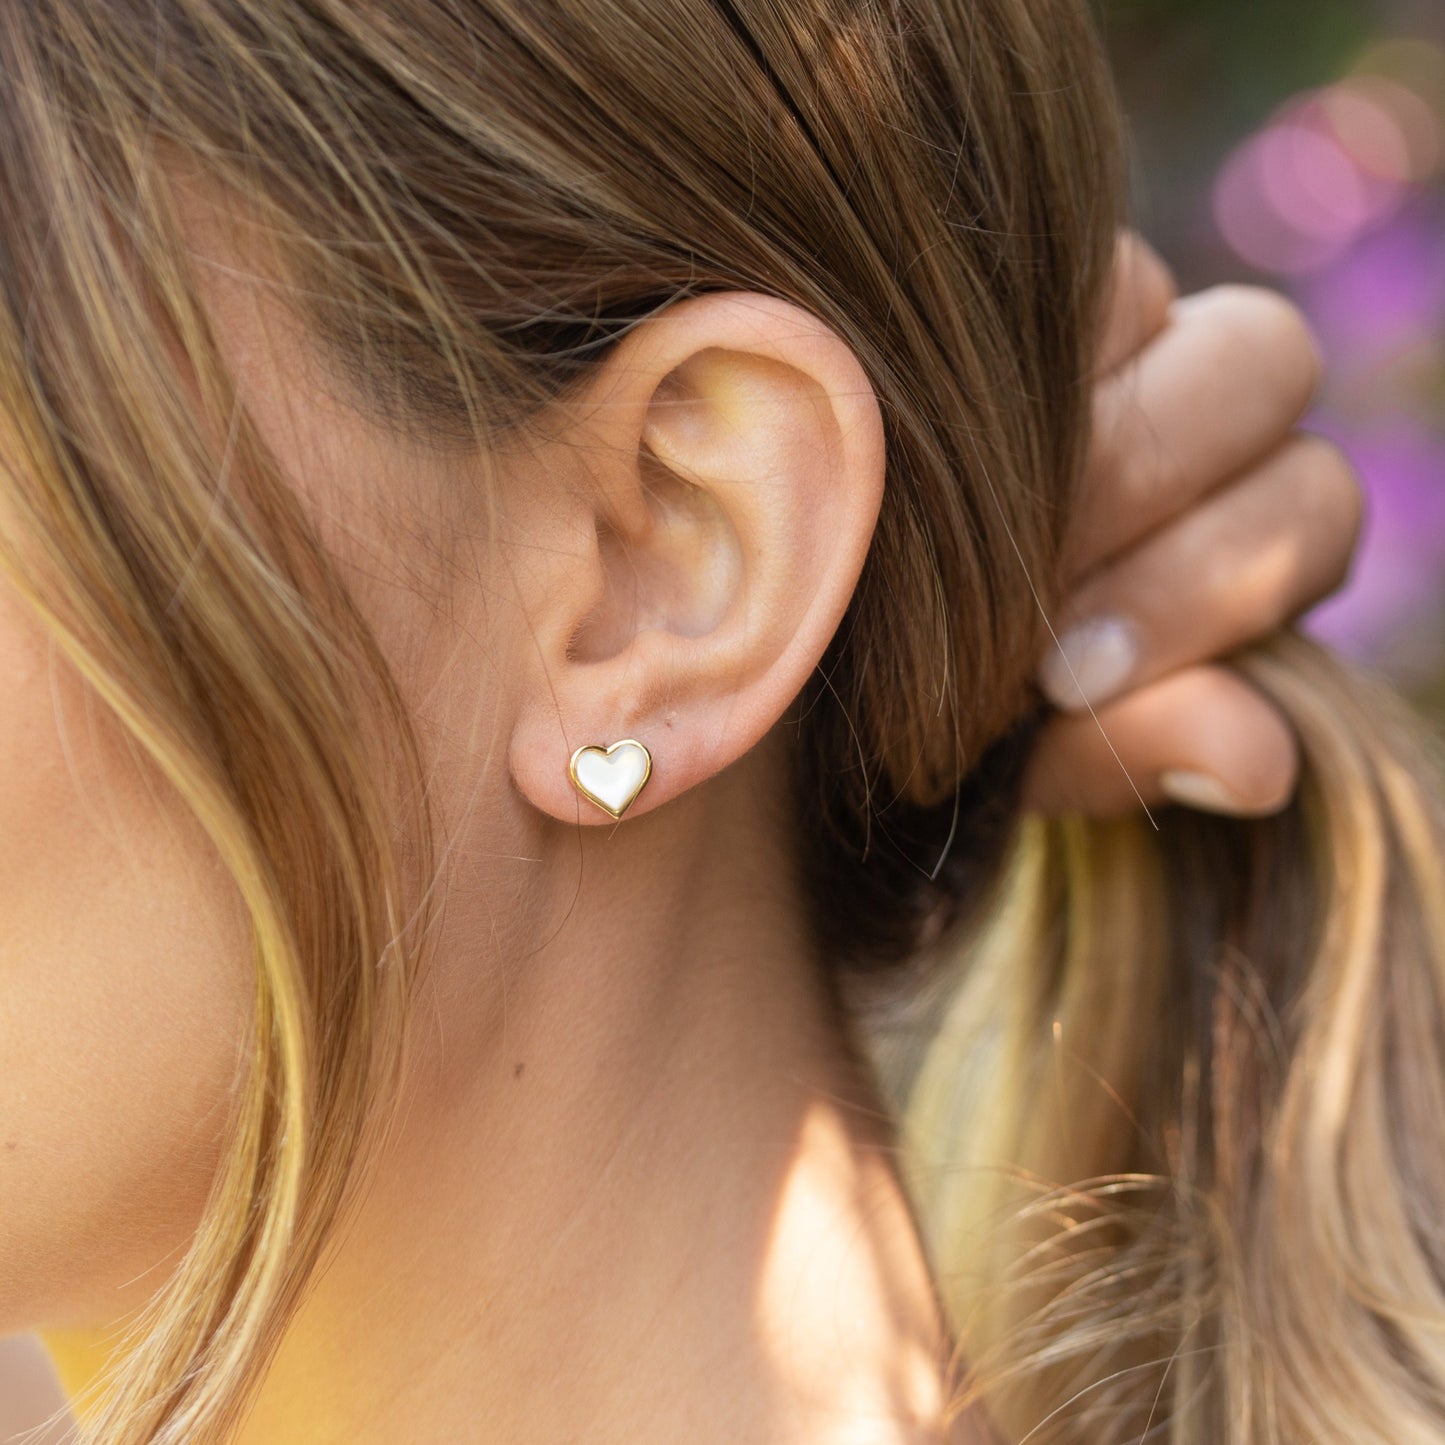 Heart Of Gold Stud Earrings